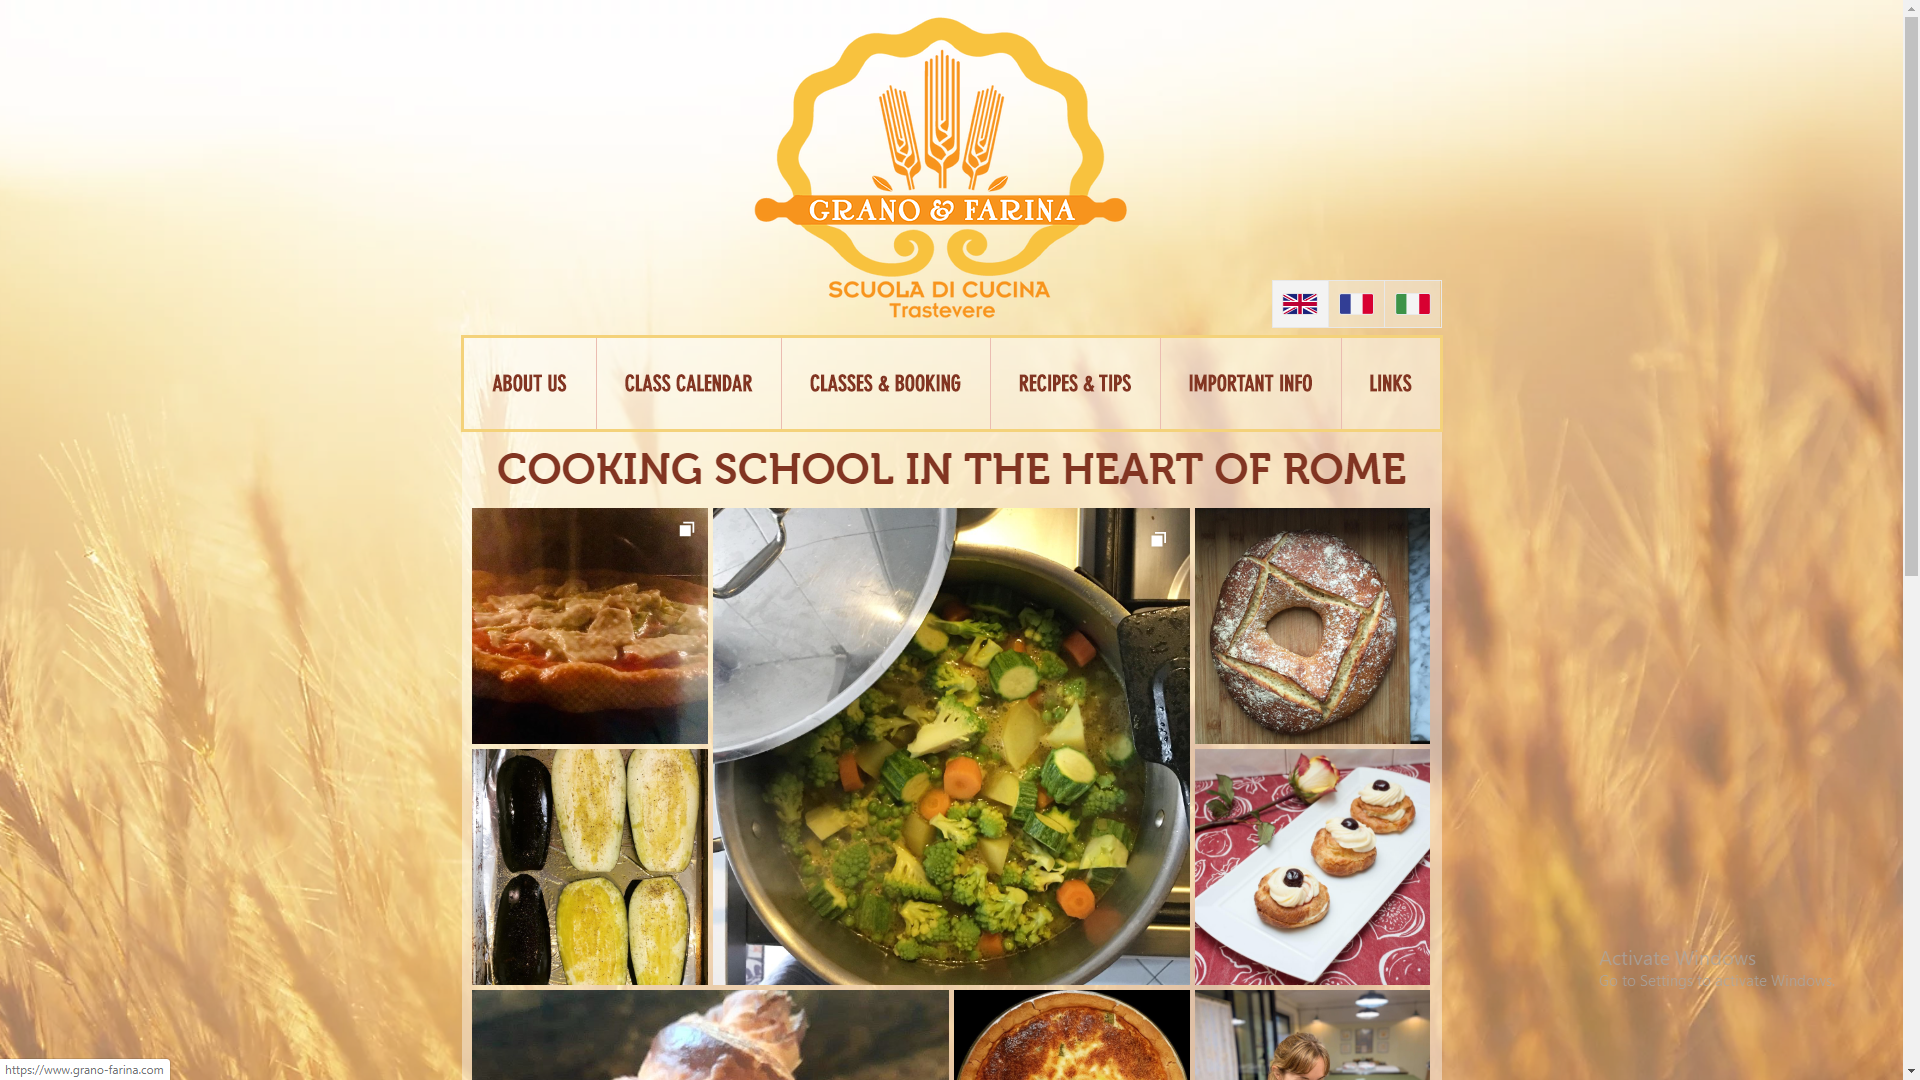 Grano & Farinia Cooking School